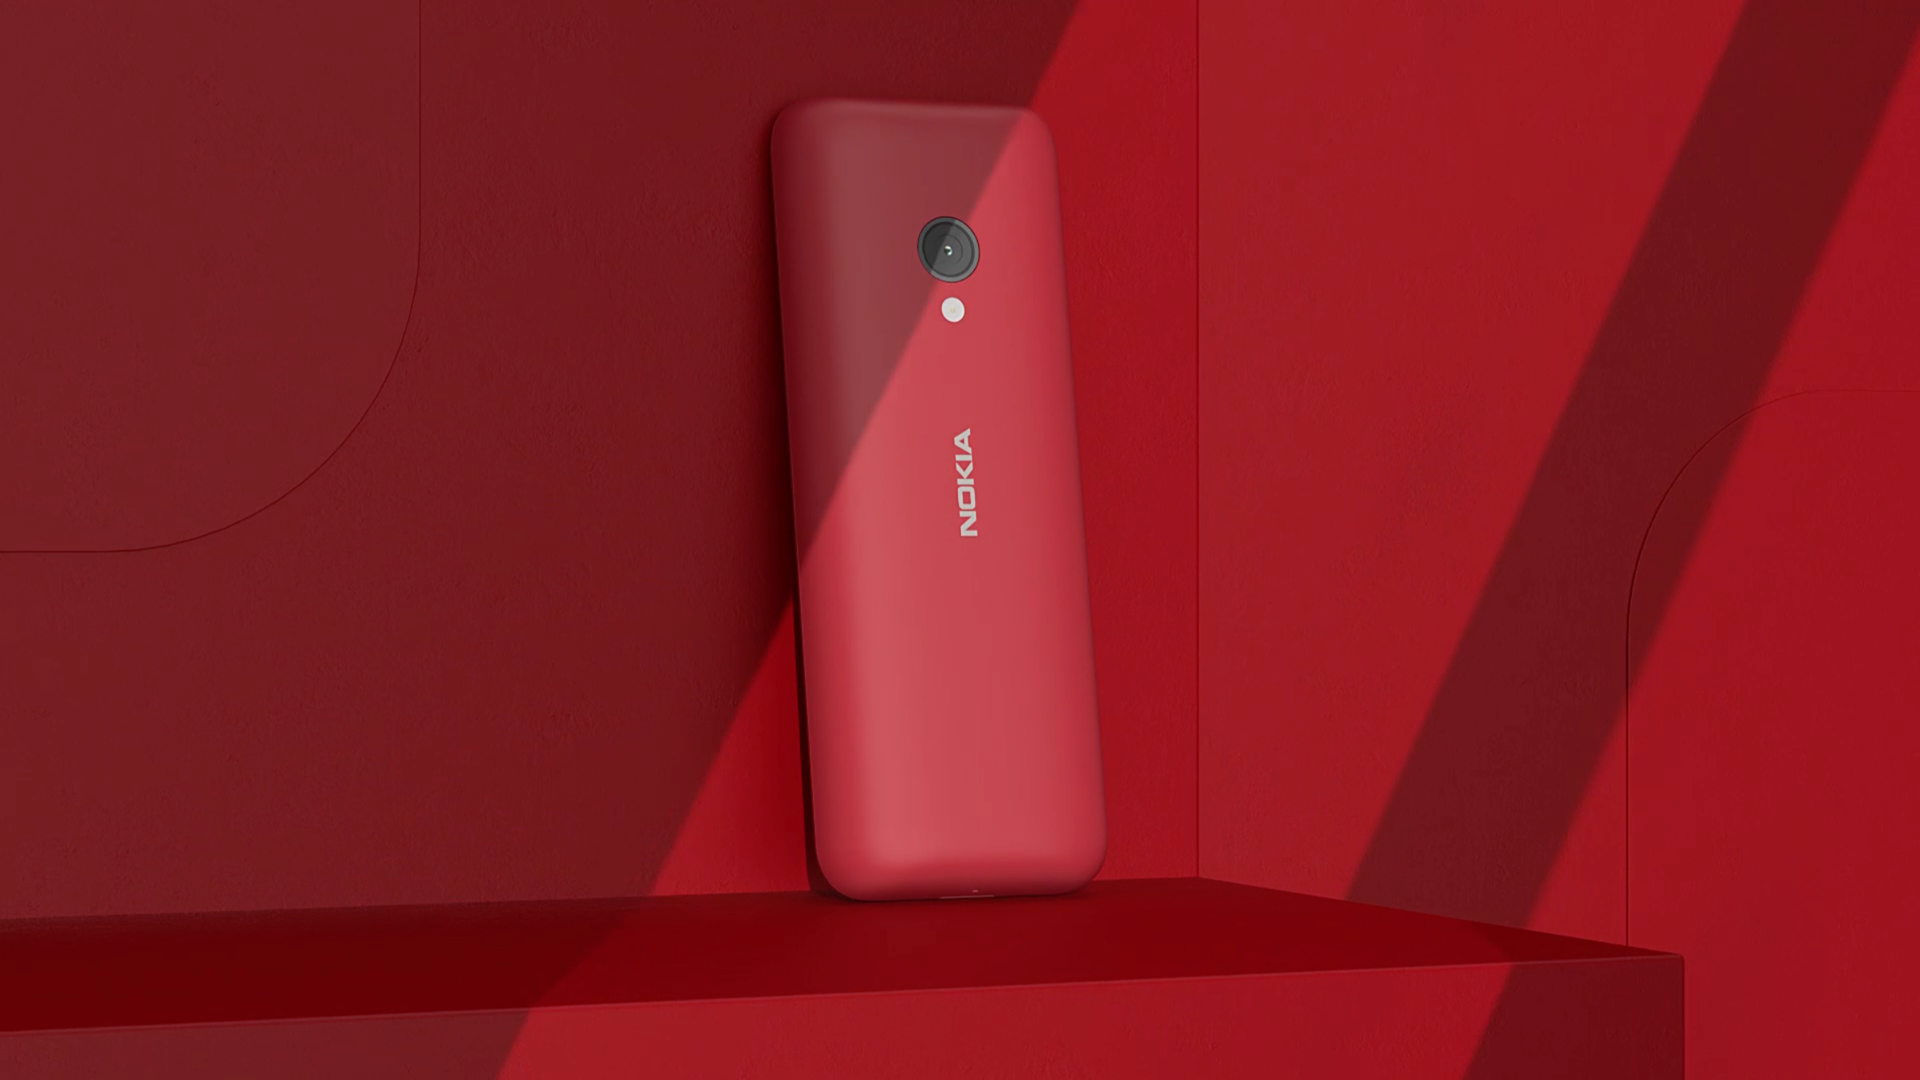 Nokia 150: Một chiếc điện thoại đáng yêu và hiệu quả với màn hình 2,4 inch, pin lâu và các tính năng cơ bản nhưng đầy đủ. Nokia 150 là một lựa chọn tốt cho những người thích những chiếc điện thoại đơn giản và bền bỉ.